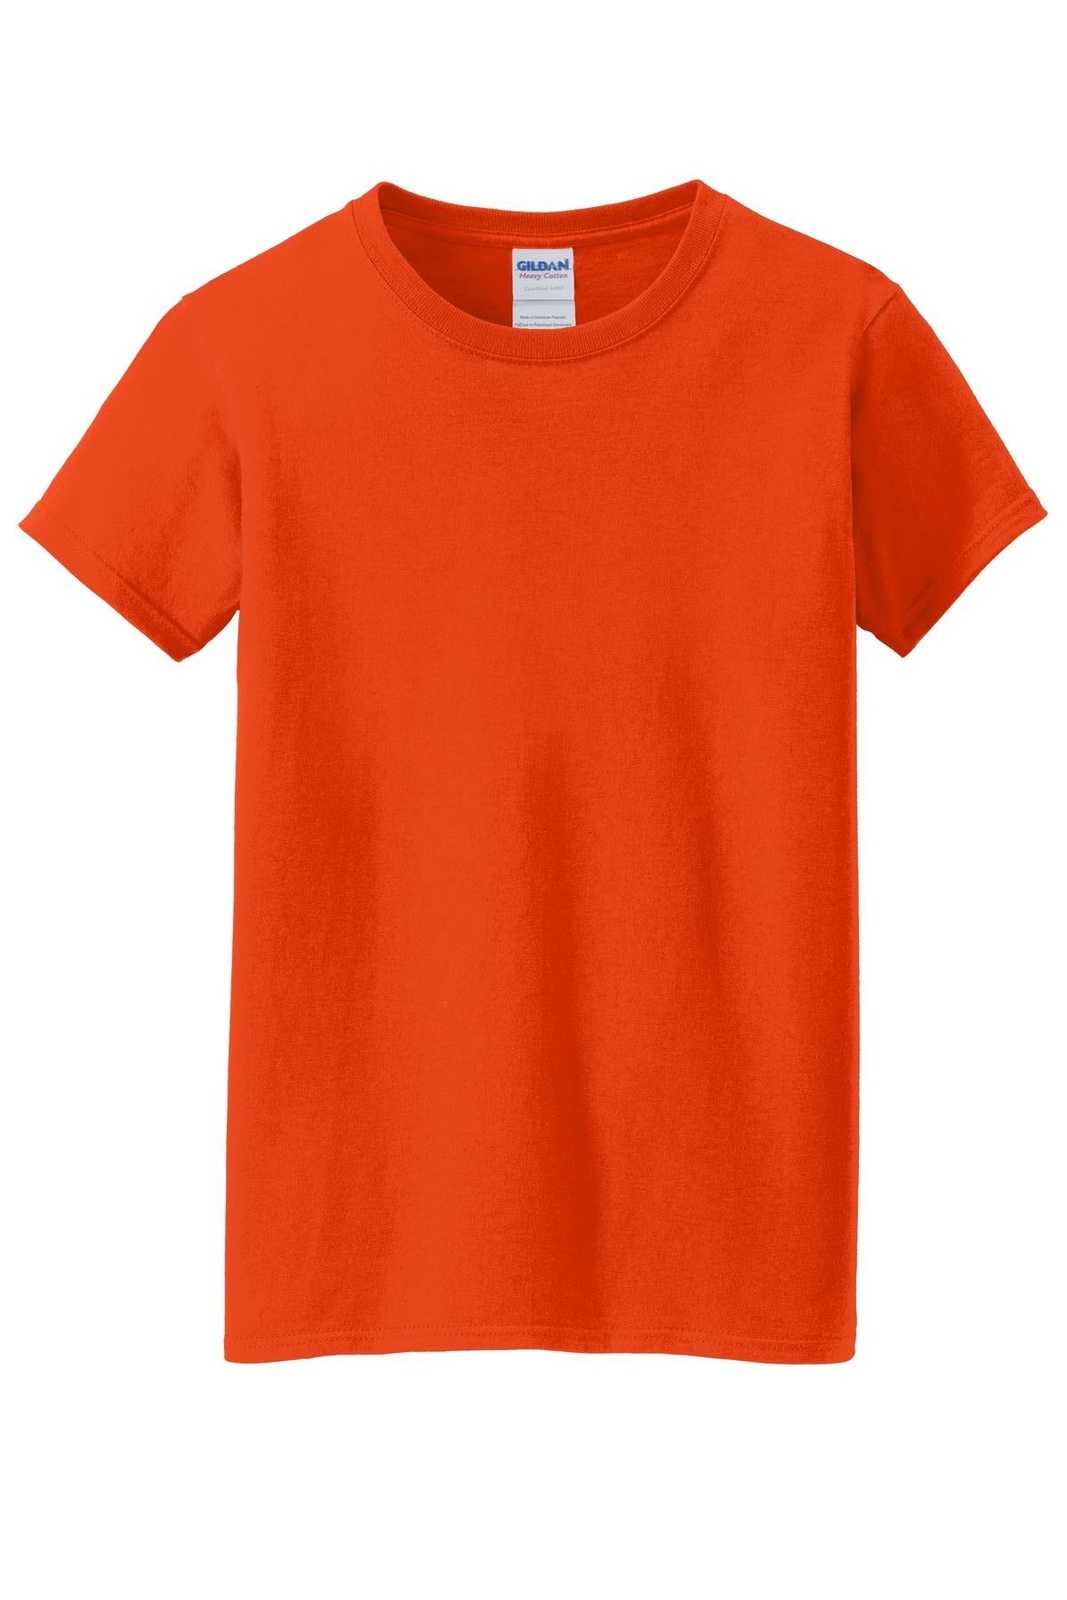 Gildan 5000L Ladies Heavy Cotton 100% Cotton T-Shirt - Orange - HIT a Double